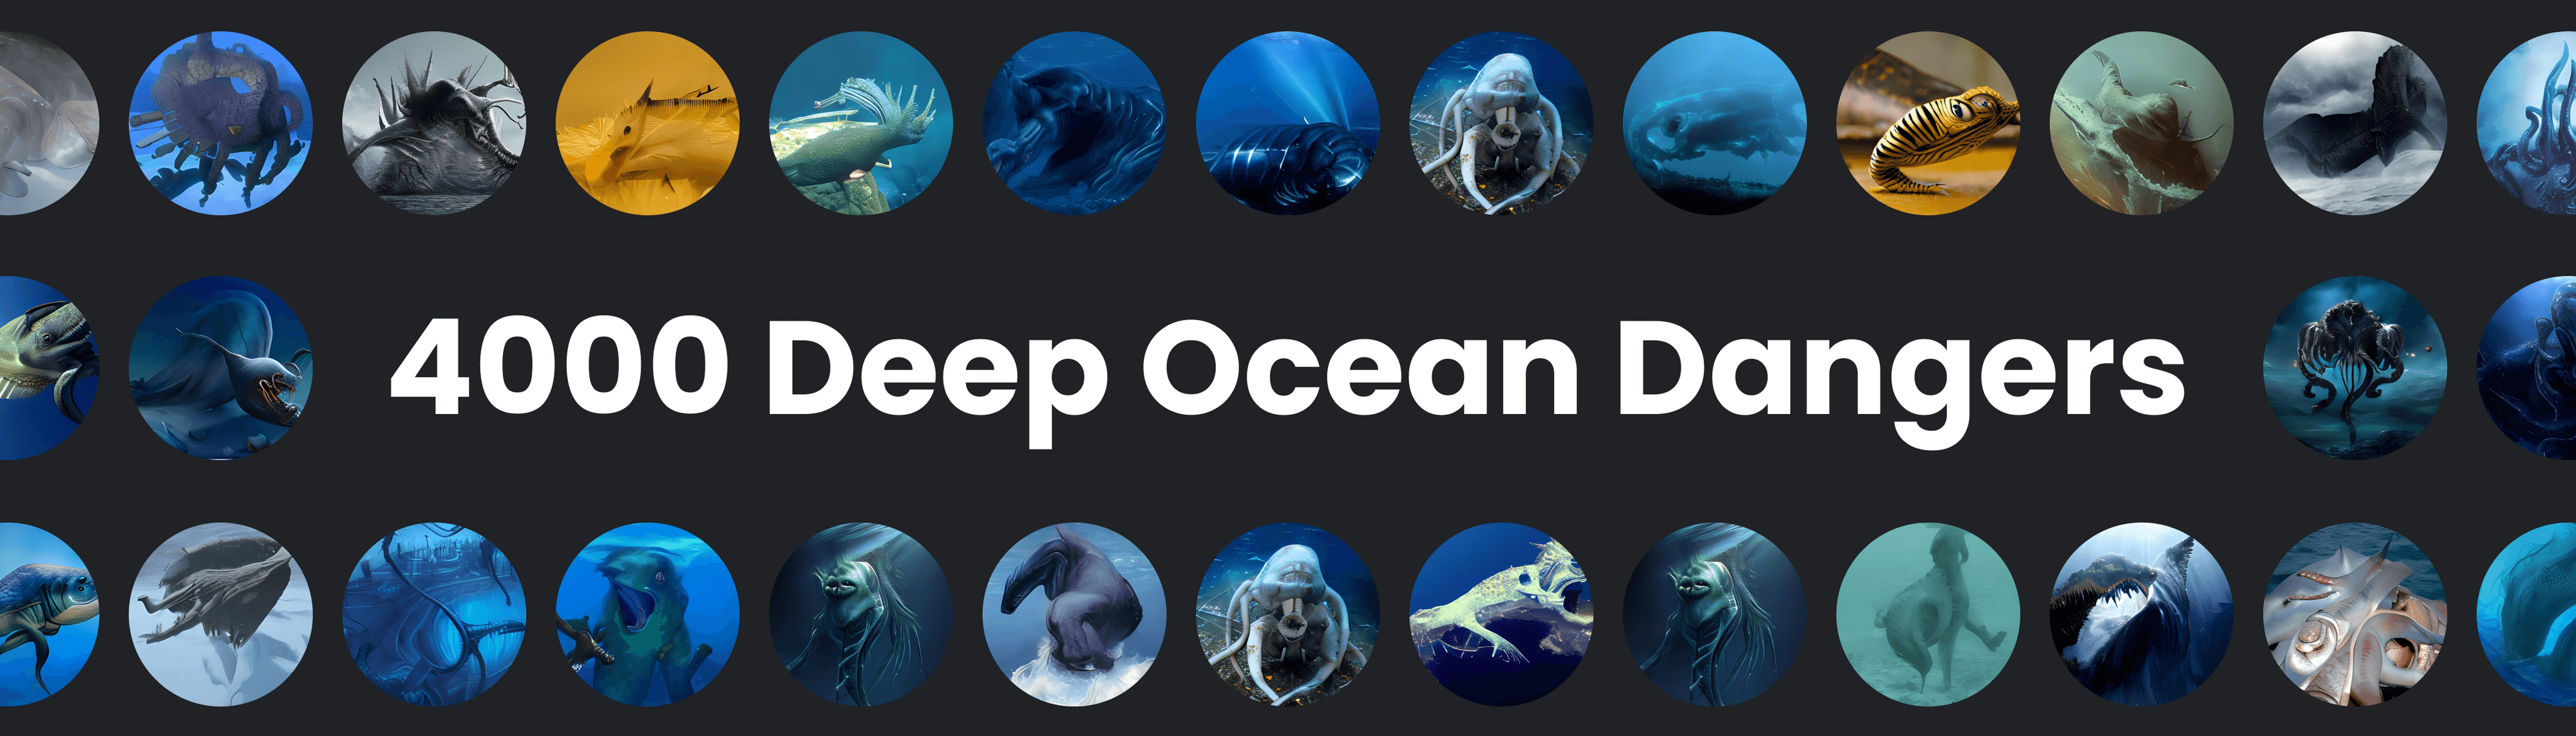 DeepOceanProfile banner